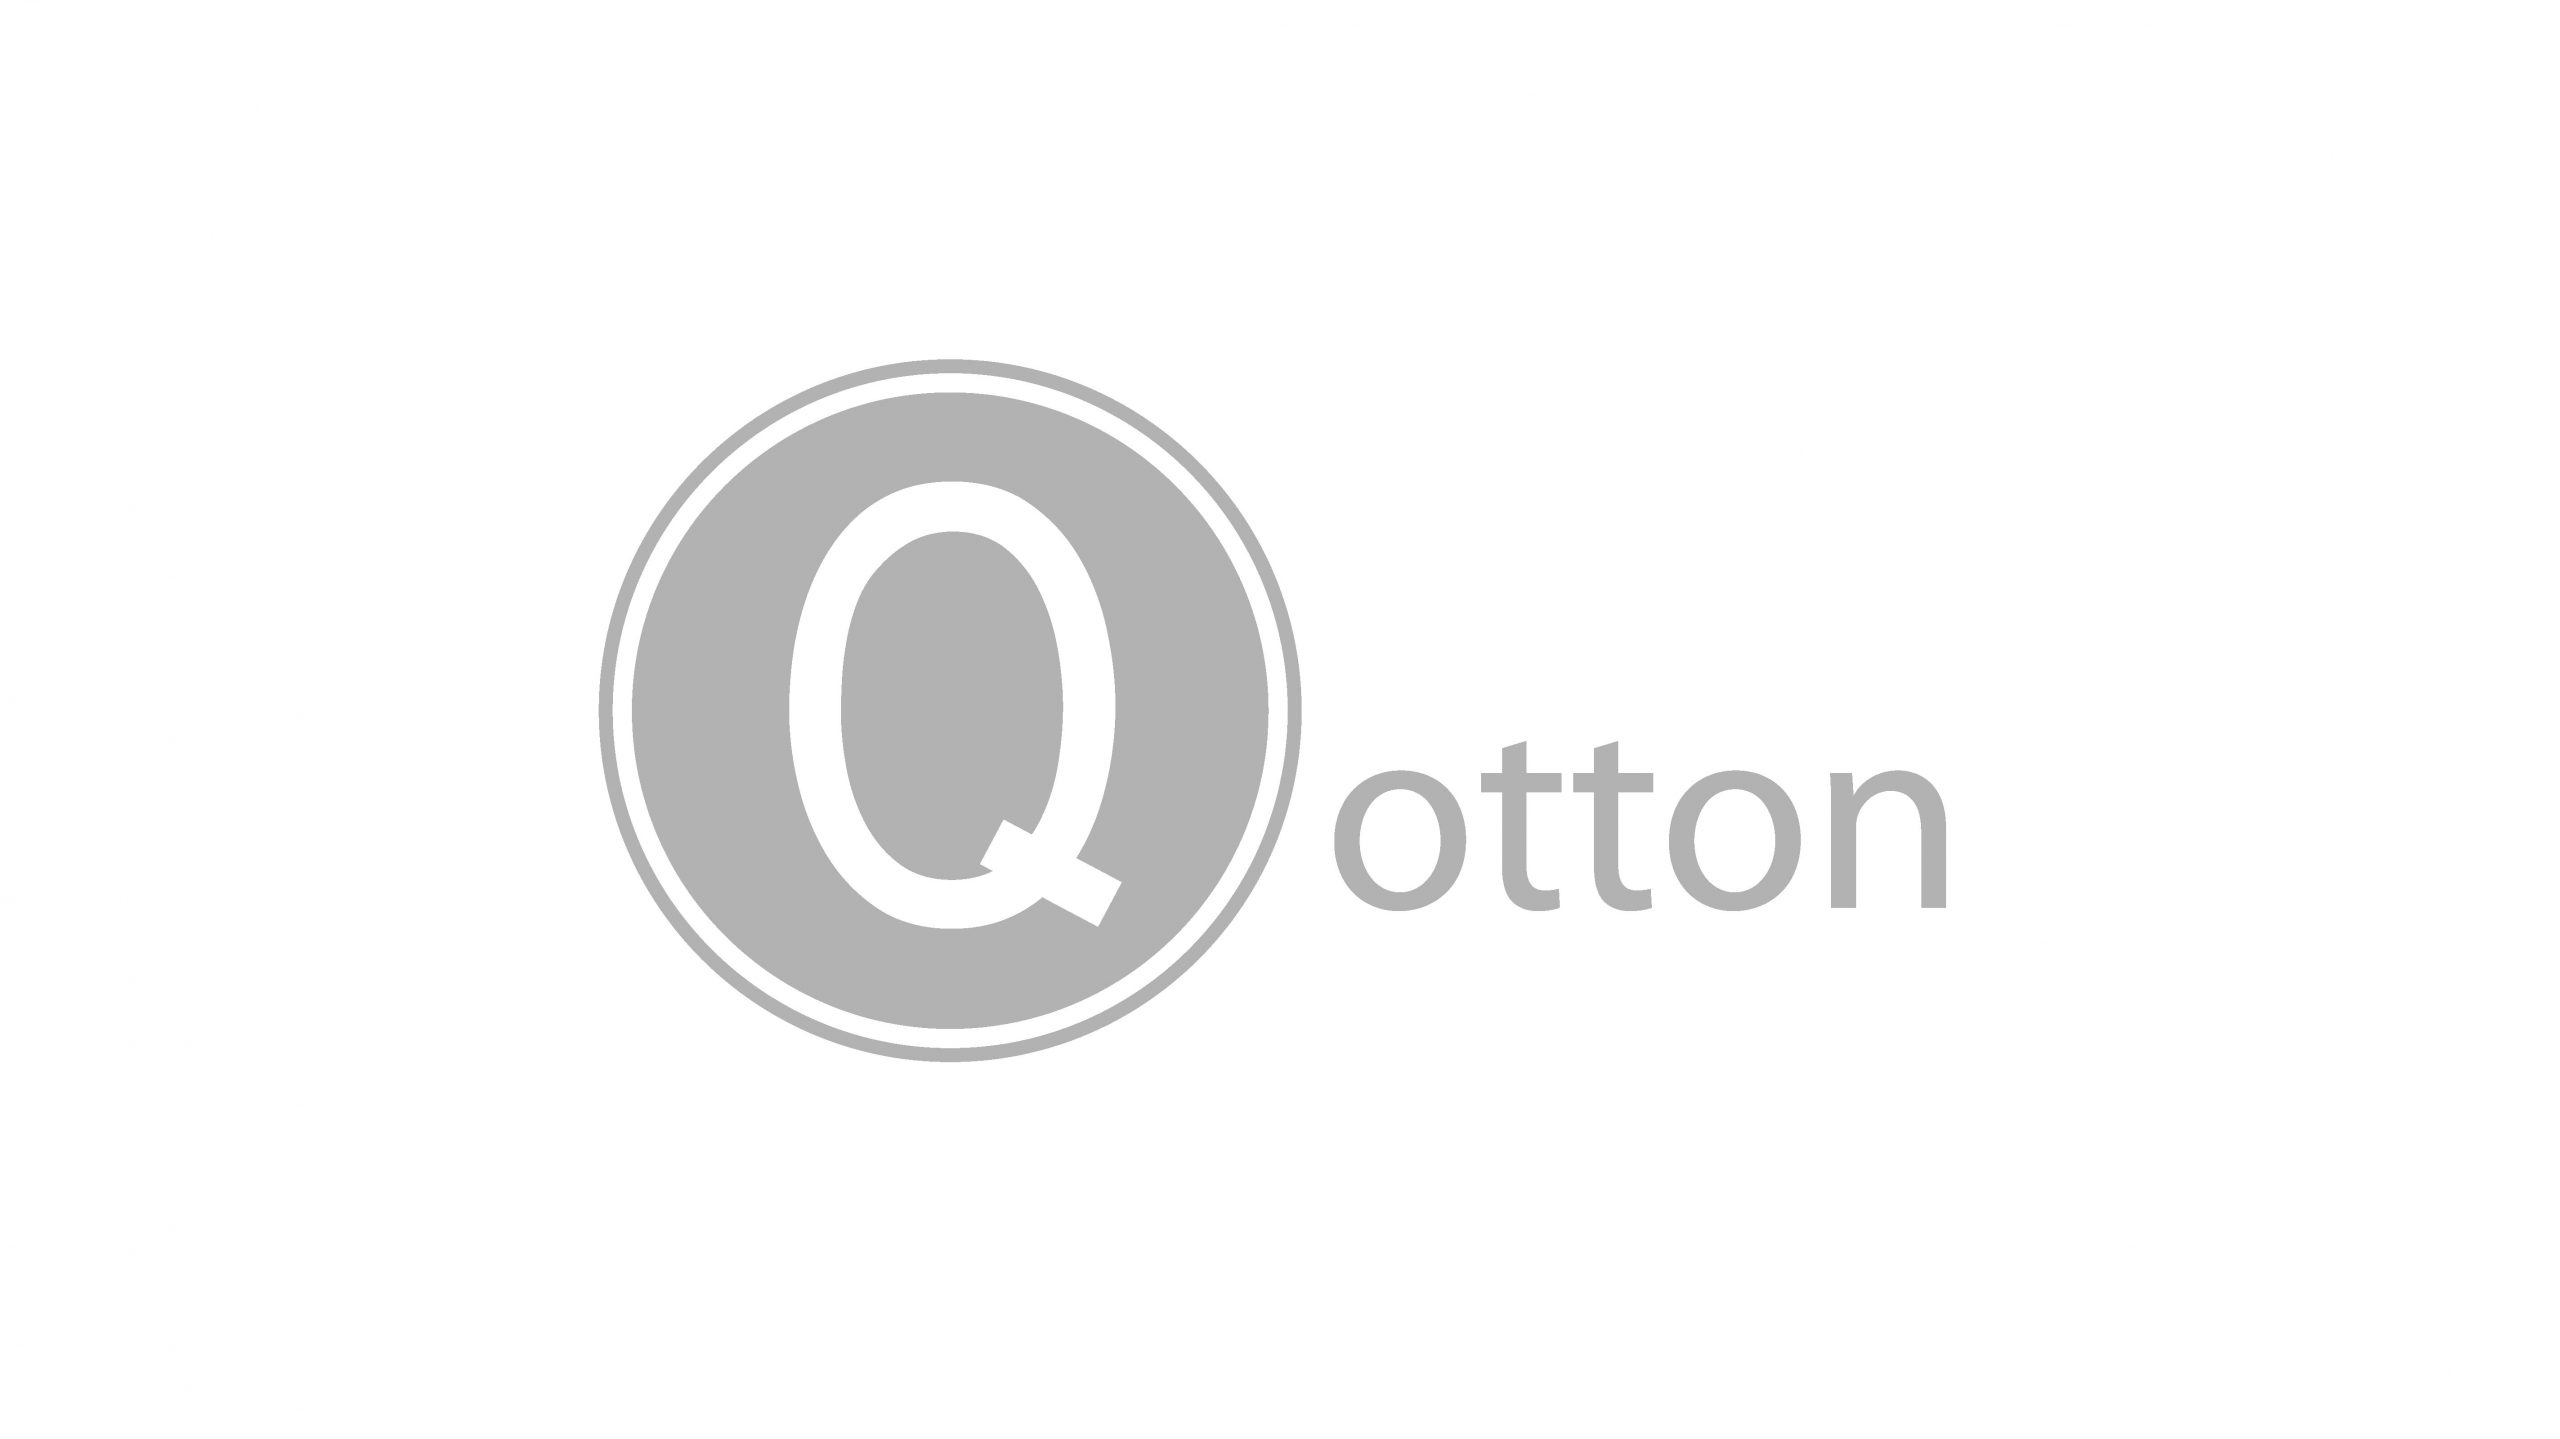 Logo ontwerp voor Qotton